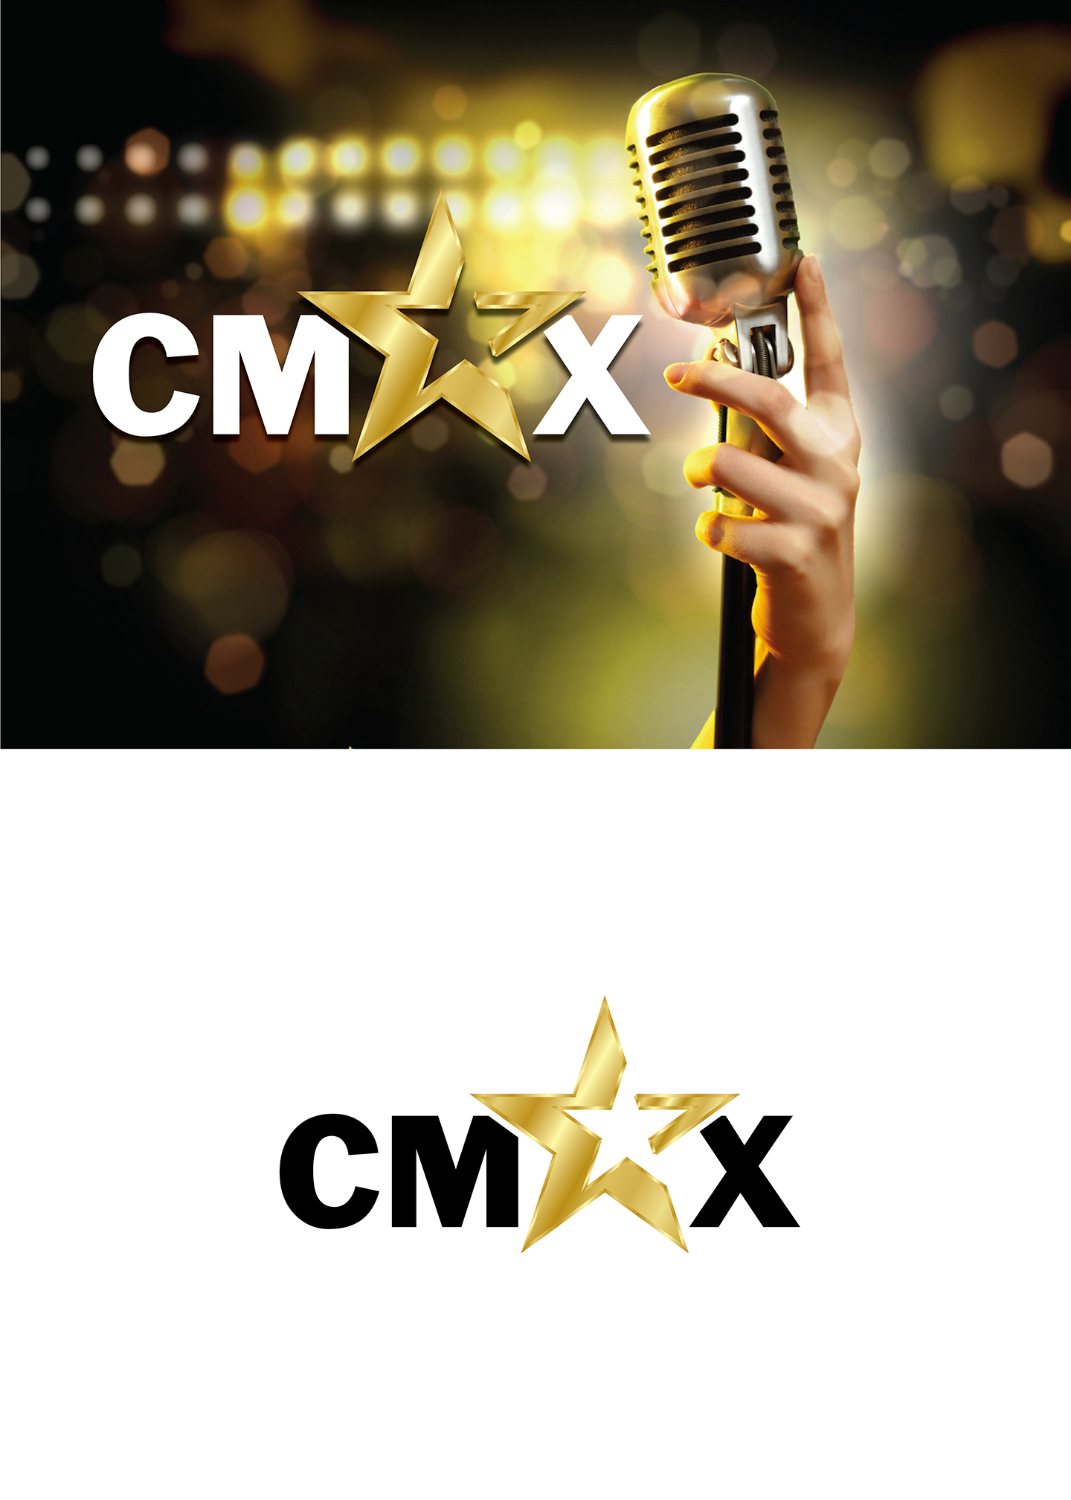 Thiet ke logo Cmax 01